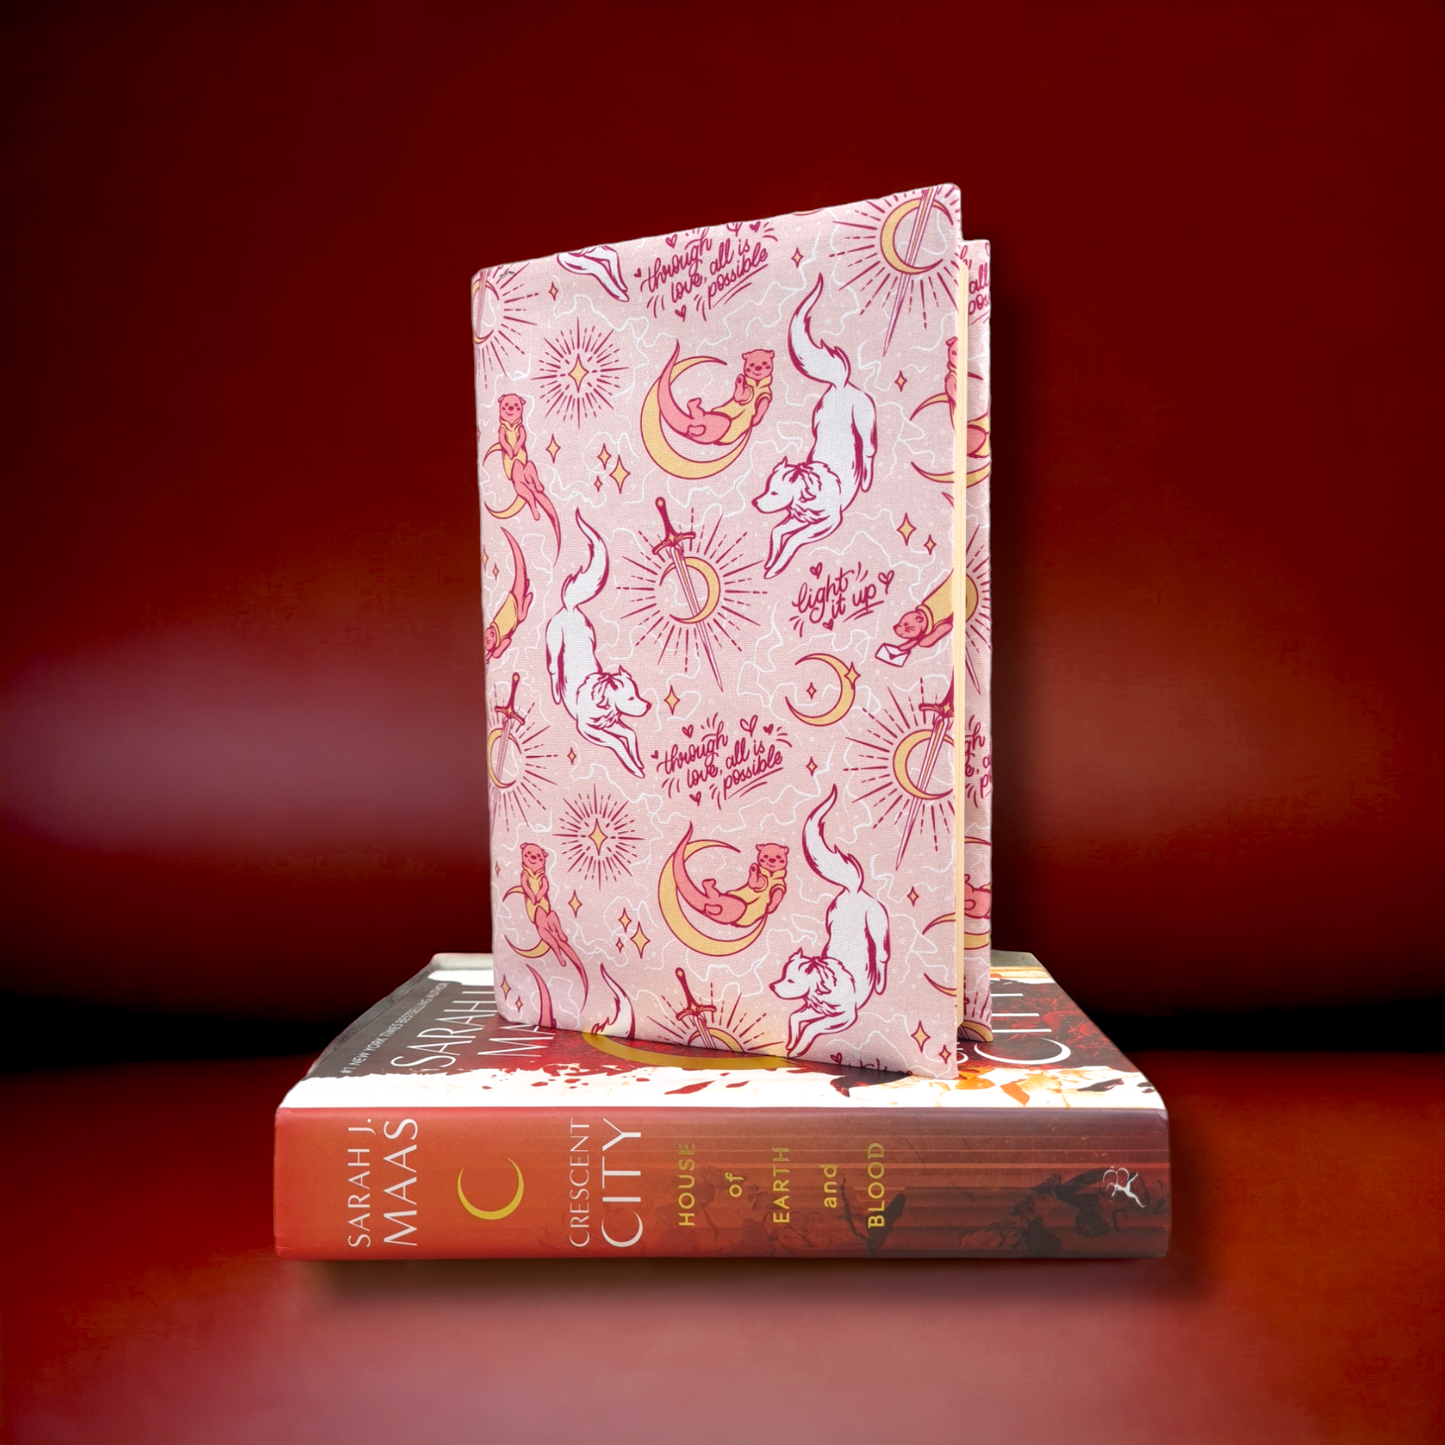 Sarah J. Maas *LARGE* fabric book cover - BUNDLE